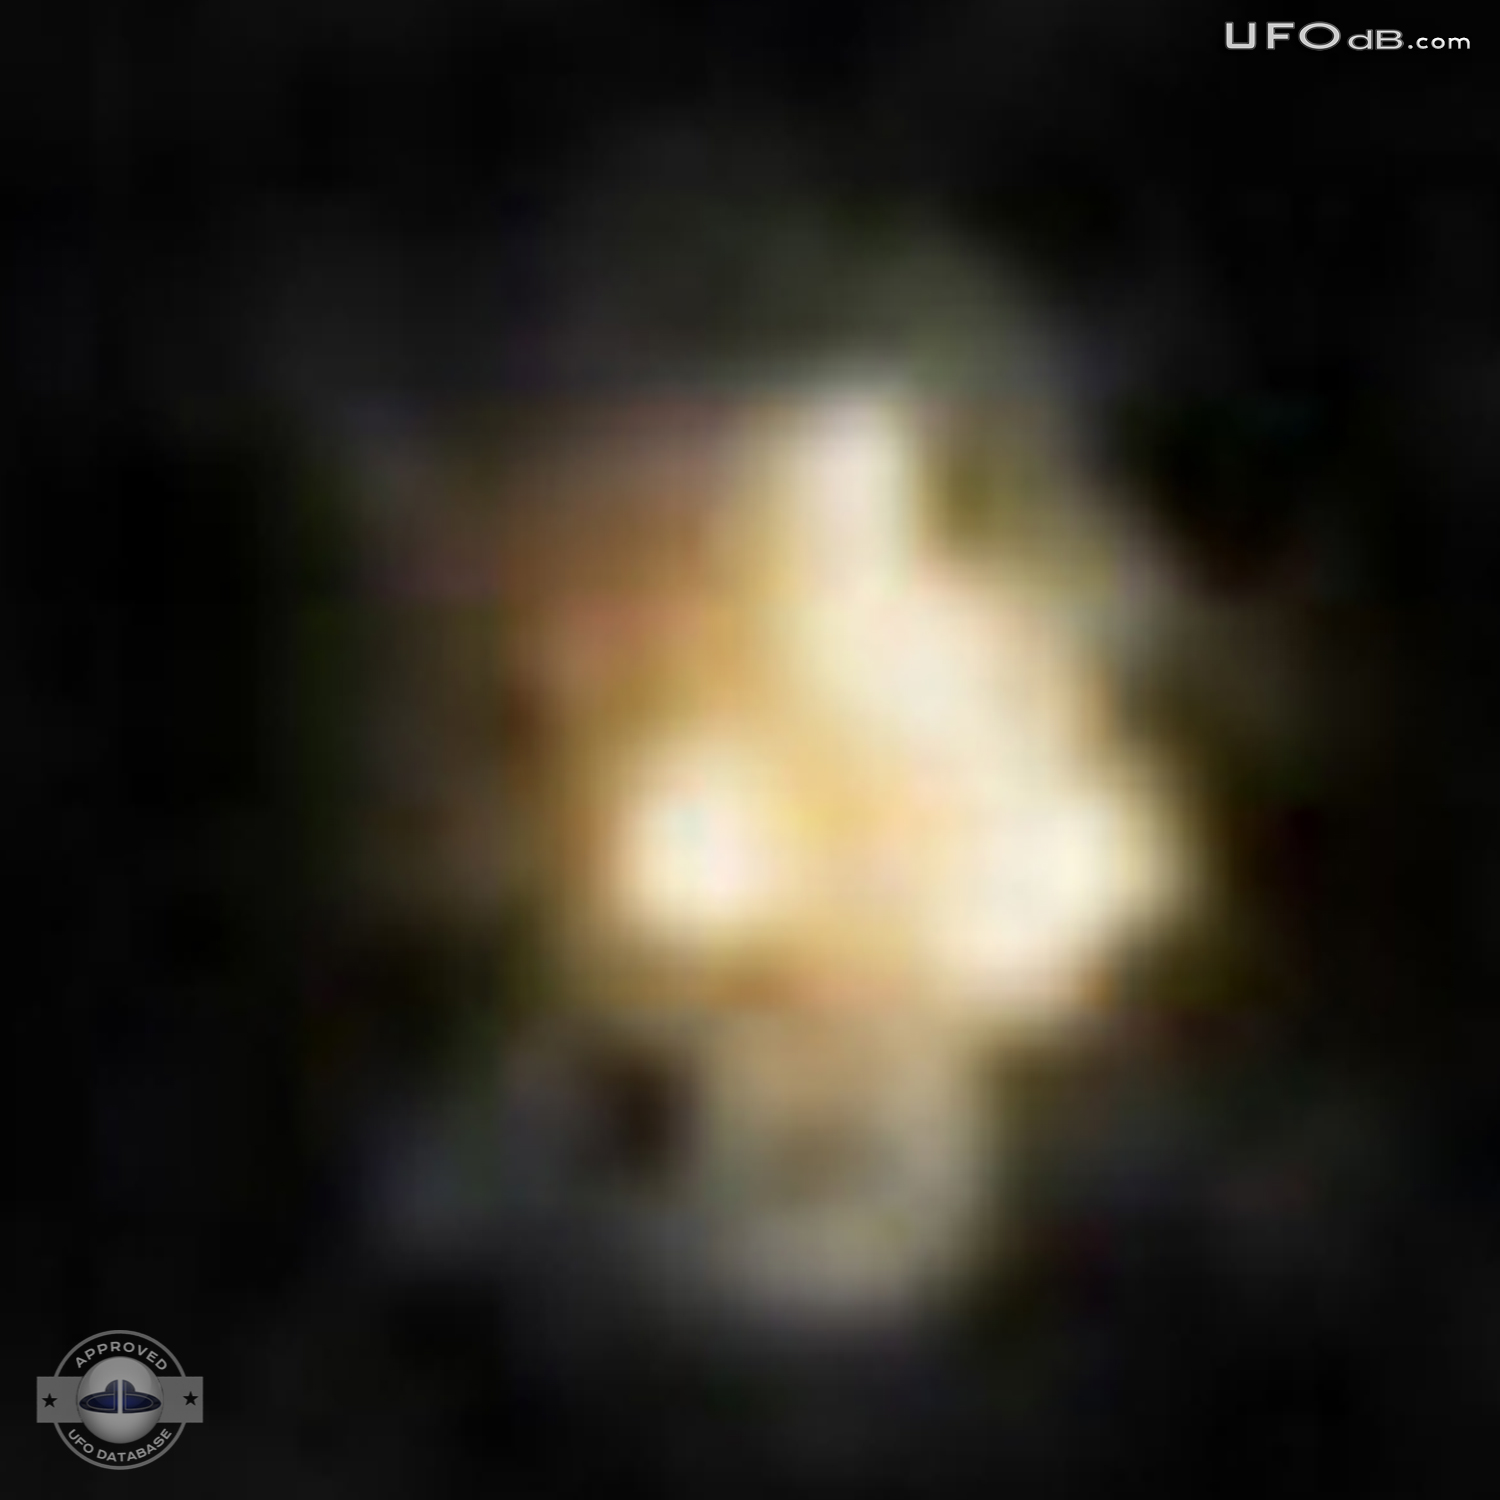 Odd Looking Star is a UFO | St. Joseph, Missouri, USA | April 12 2011 UFO Picture #300-4